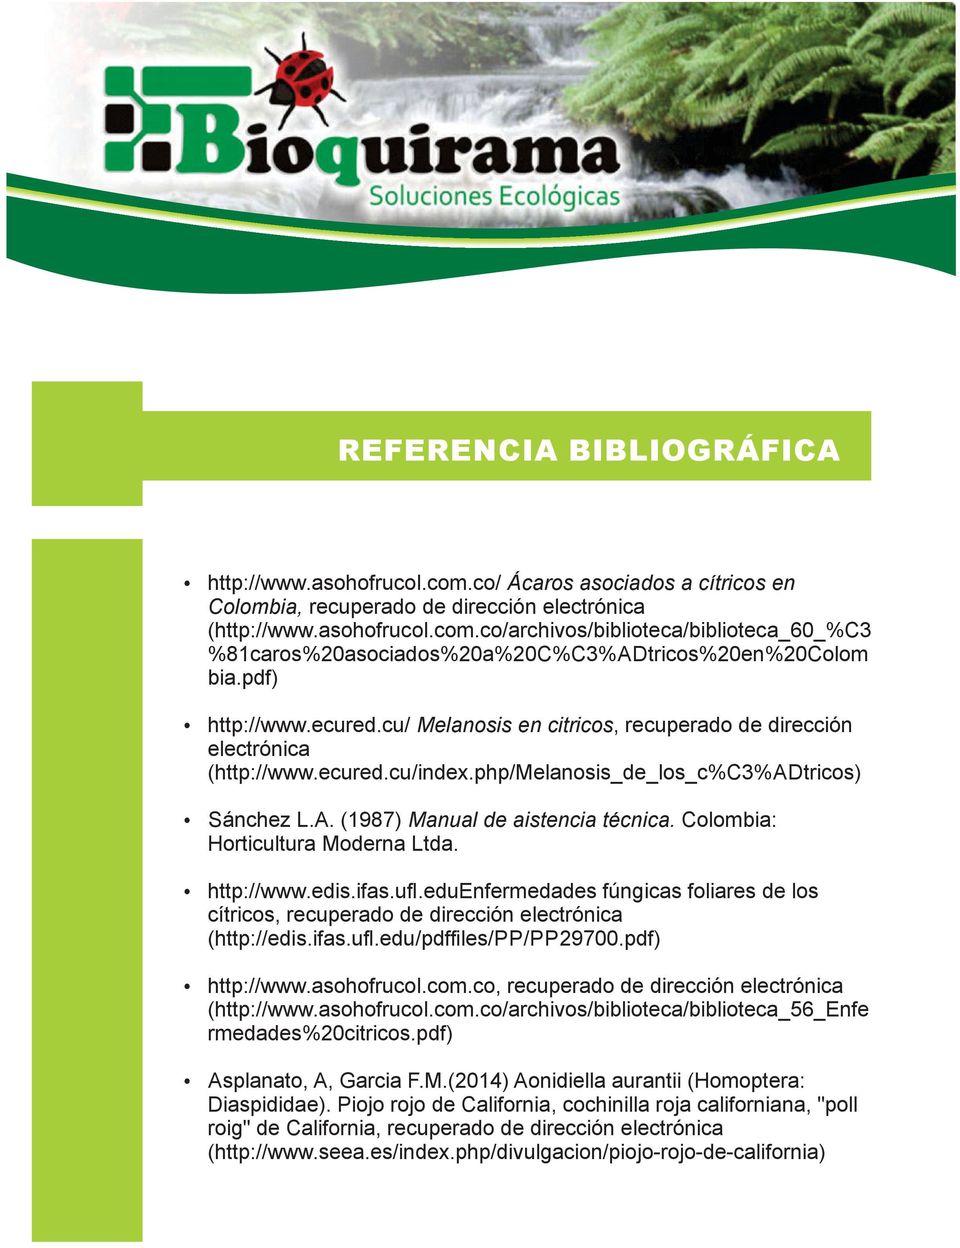 Colombia: Horticultura Moderna Ltda. http://www.edis.ifas.ufl.eduenfermedades fúngicas foliares de los cítricos, recuperado de dirección electrónica (http://edis.ifas.ufl.edu/pdffiles/pp/pp29700.